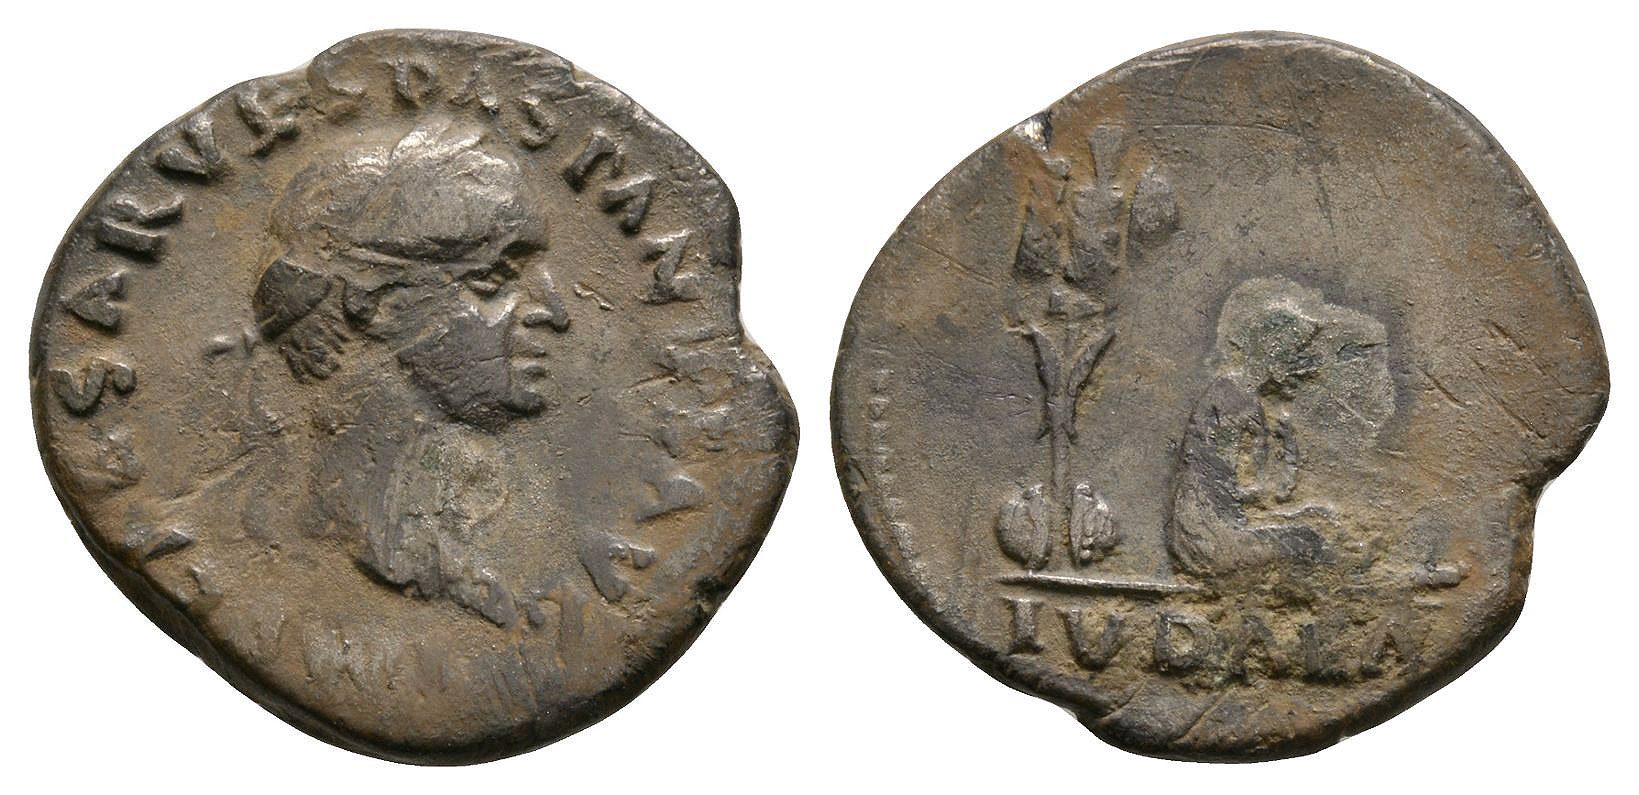 Vespasian - Judea Capta Denarius